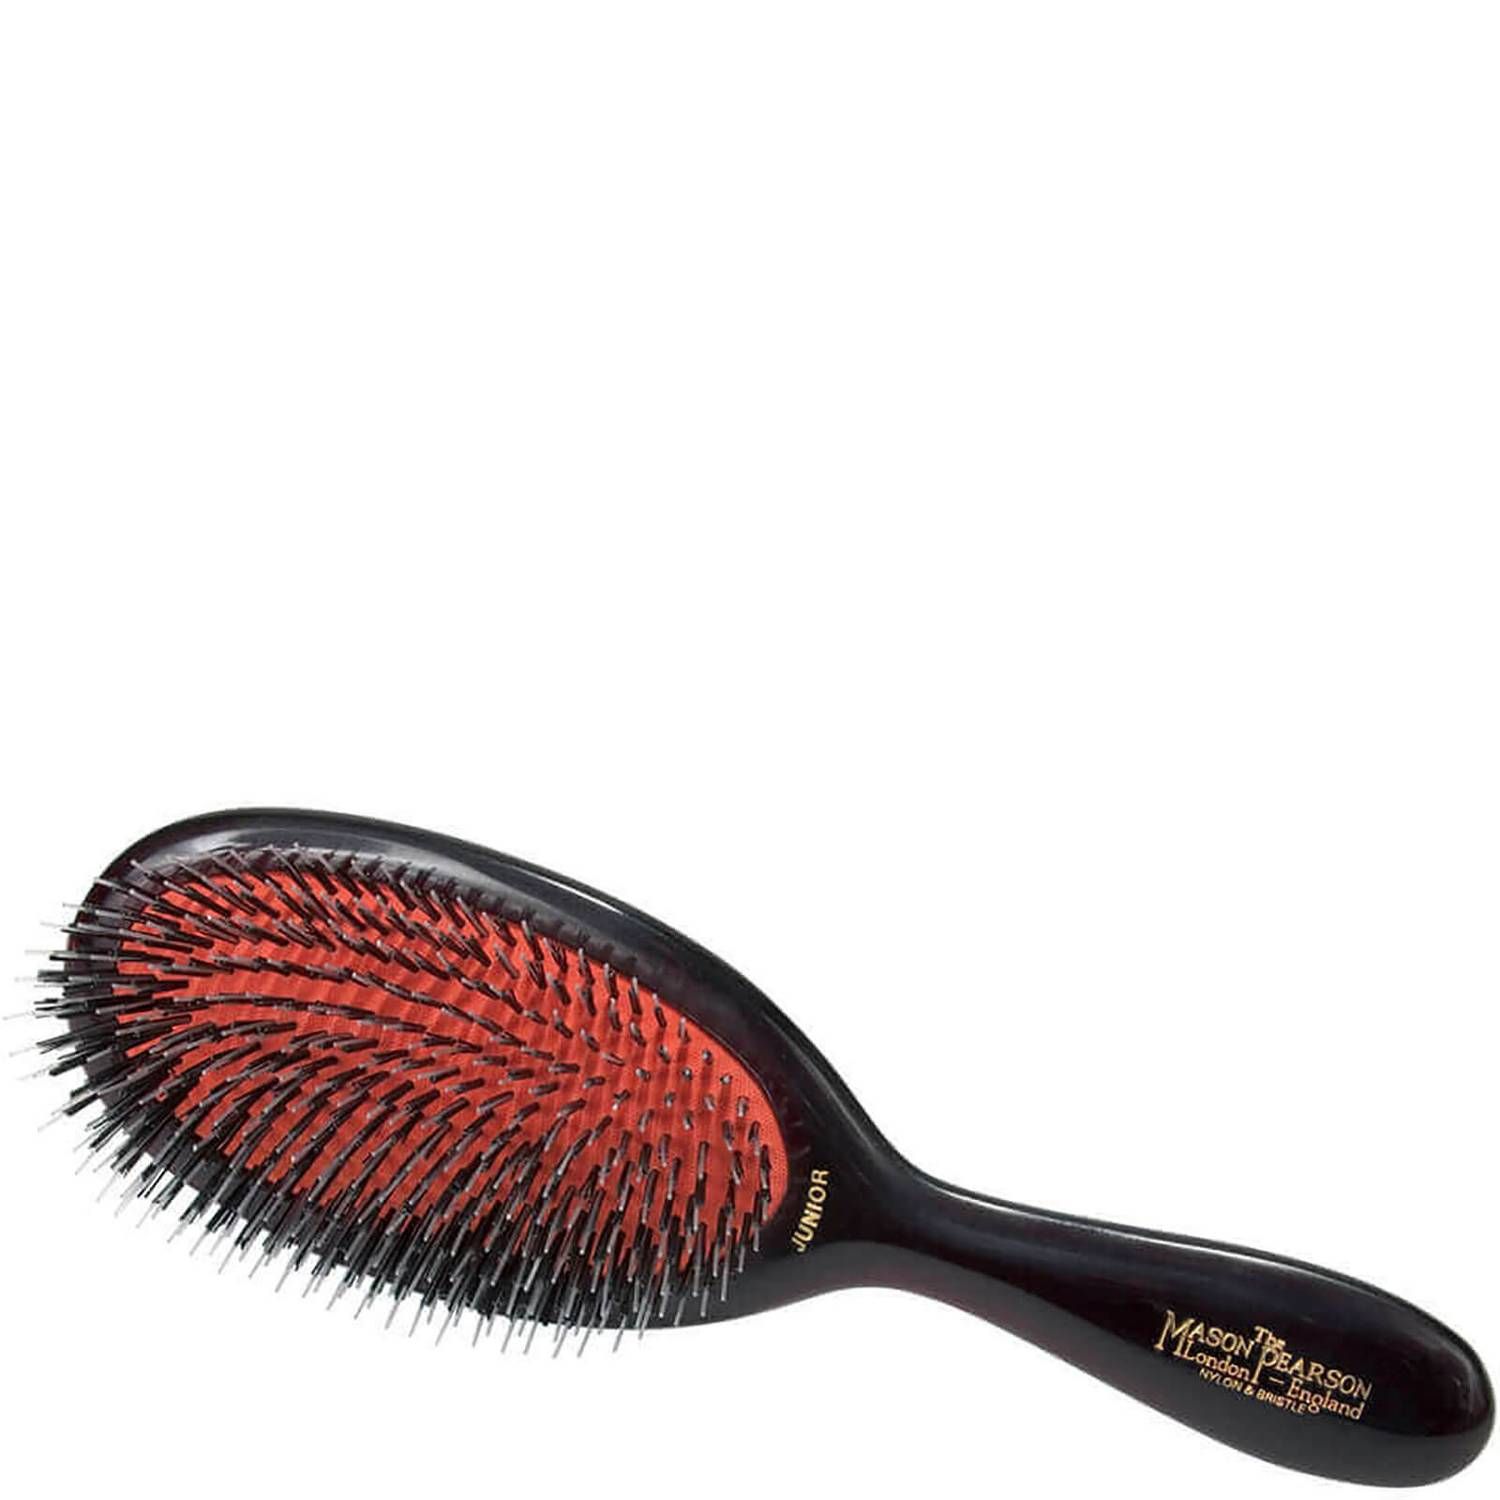 Mason Pearson Junior Mixture Hair Brush (1 piece) | Dermstore